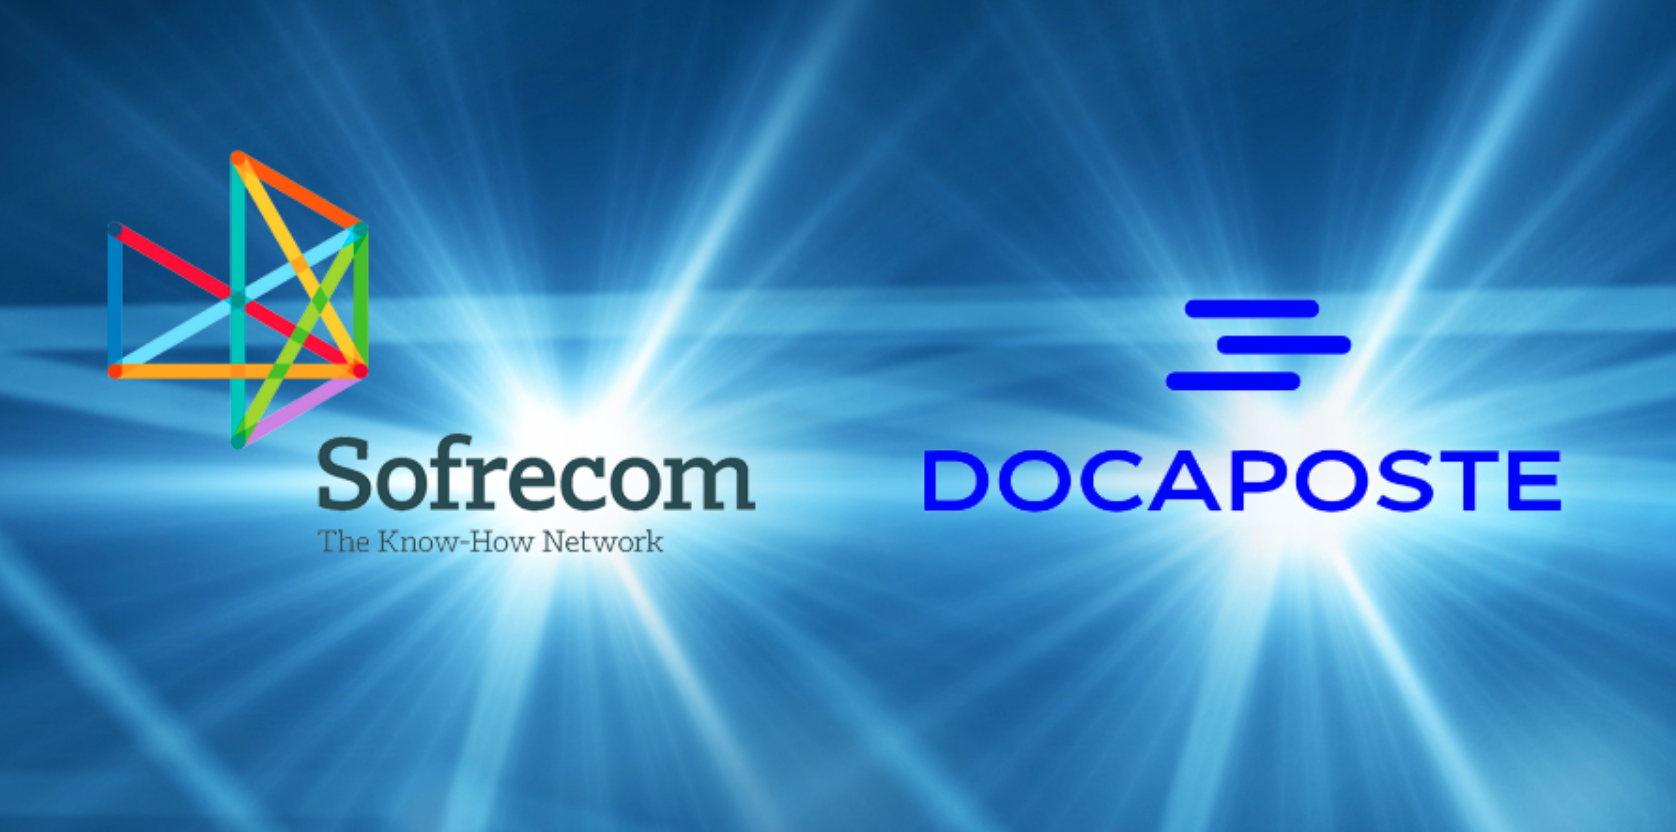 Sofrecom et Docaposte s’allient pour accélérer la transformation numérique en Afrique et au Moyen Orient